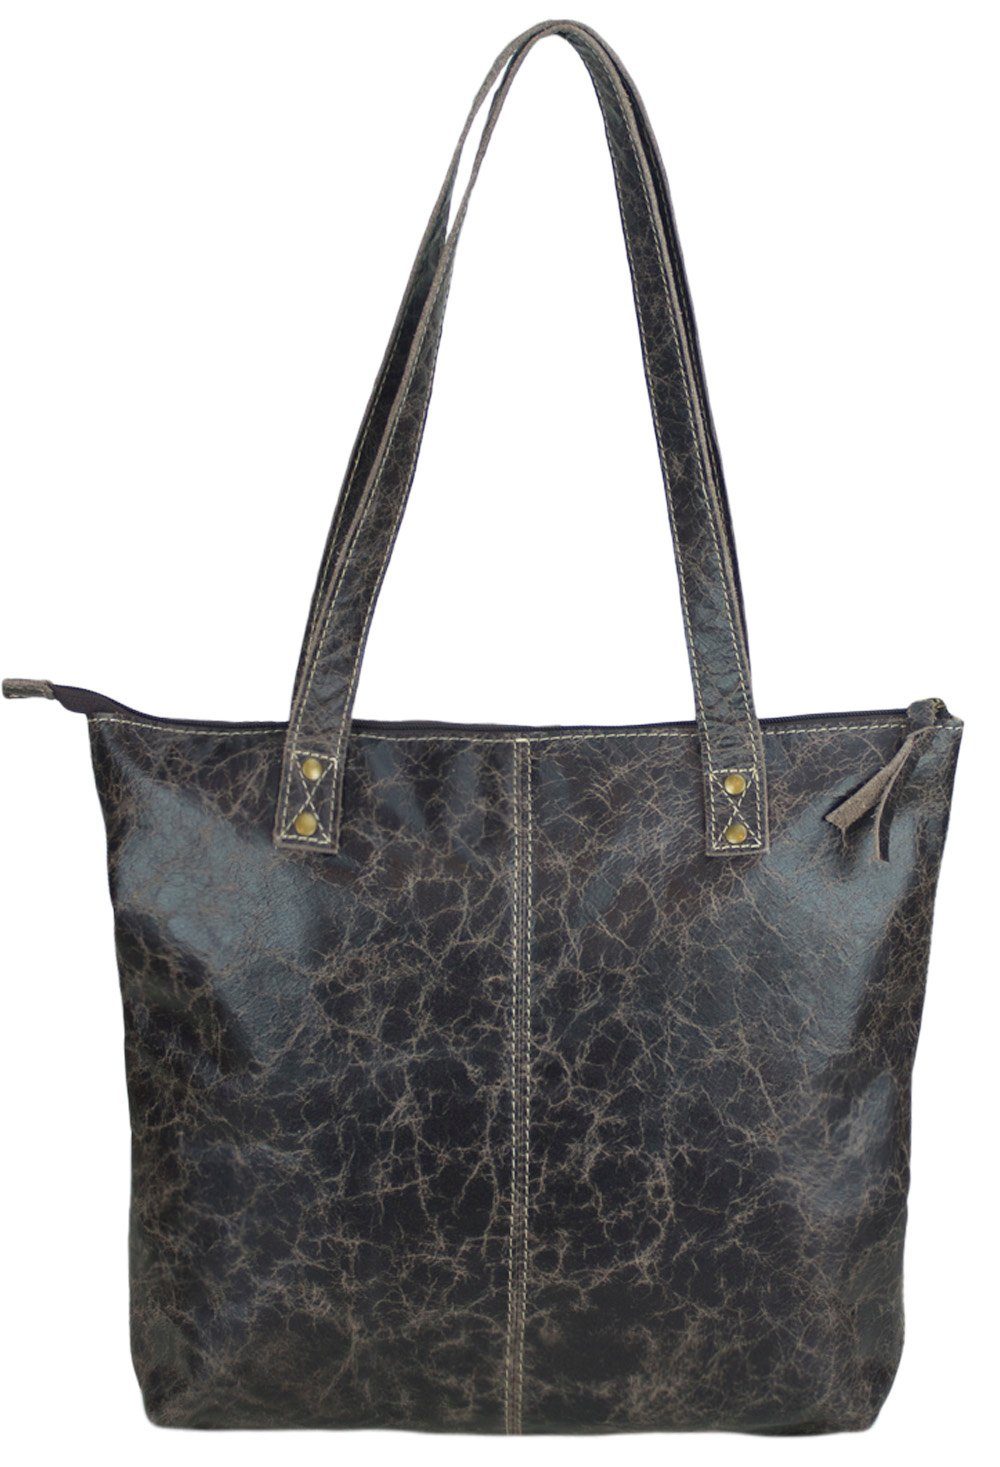 Sunsa Handtasche Leder Handtasche. D. braune Shopper. große Tote. Handgelenktasche in Retro Vintage Design .Tragetasche für Sie